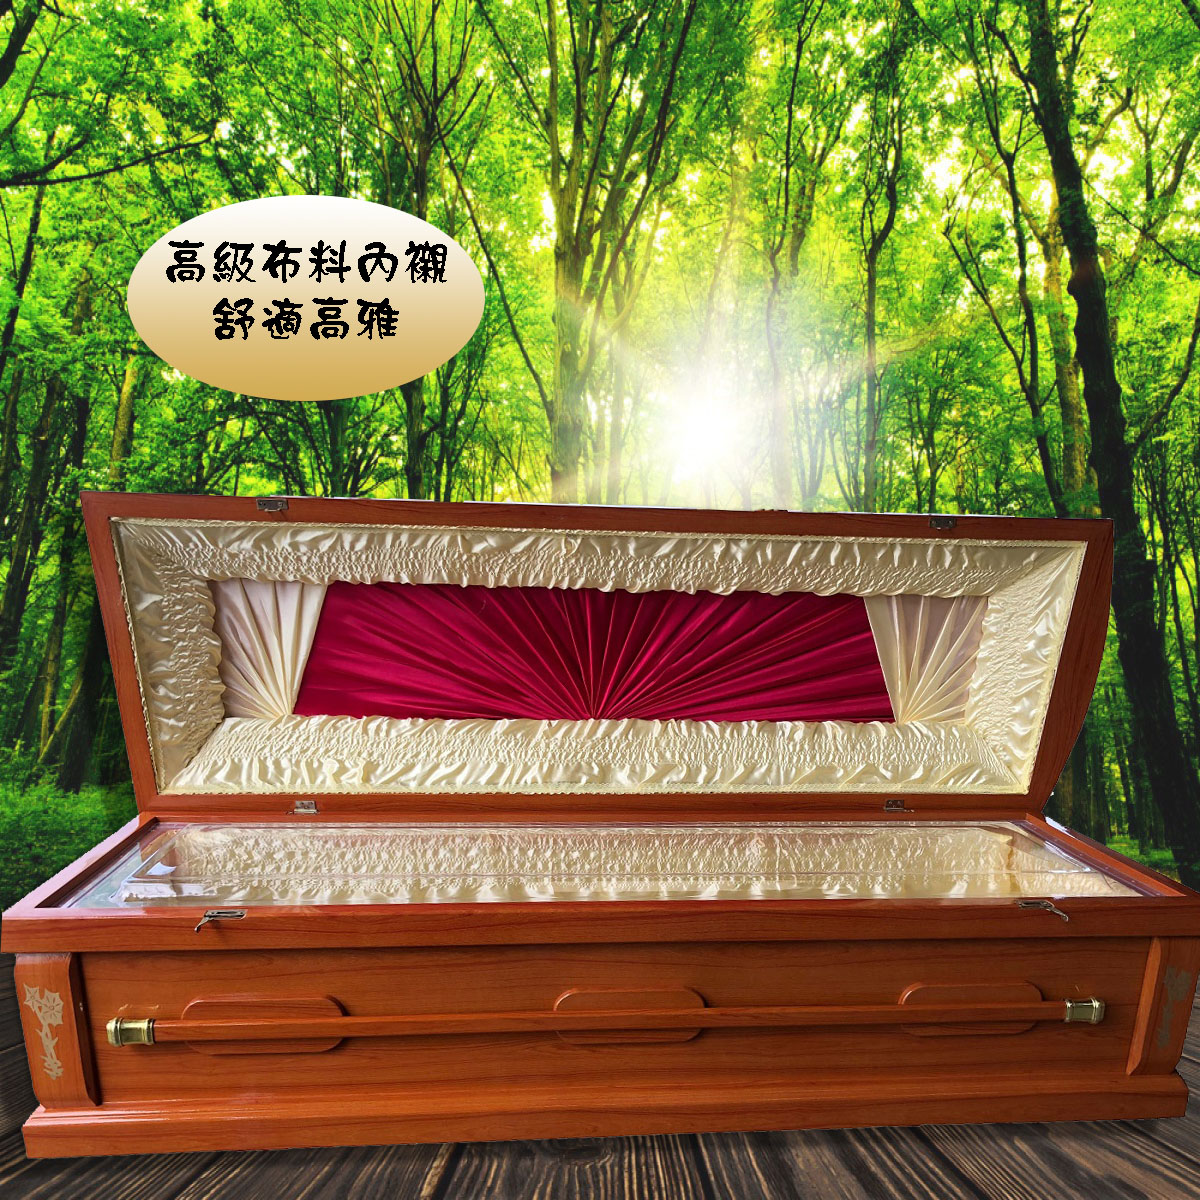 【入殮出】火化平蓋胡桃木扶手棺2.4尺